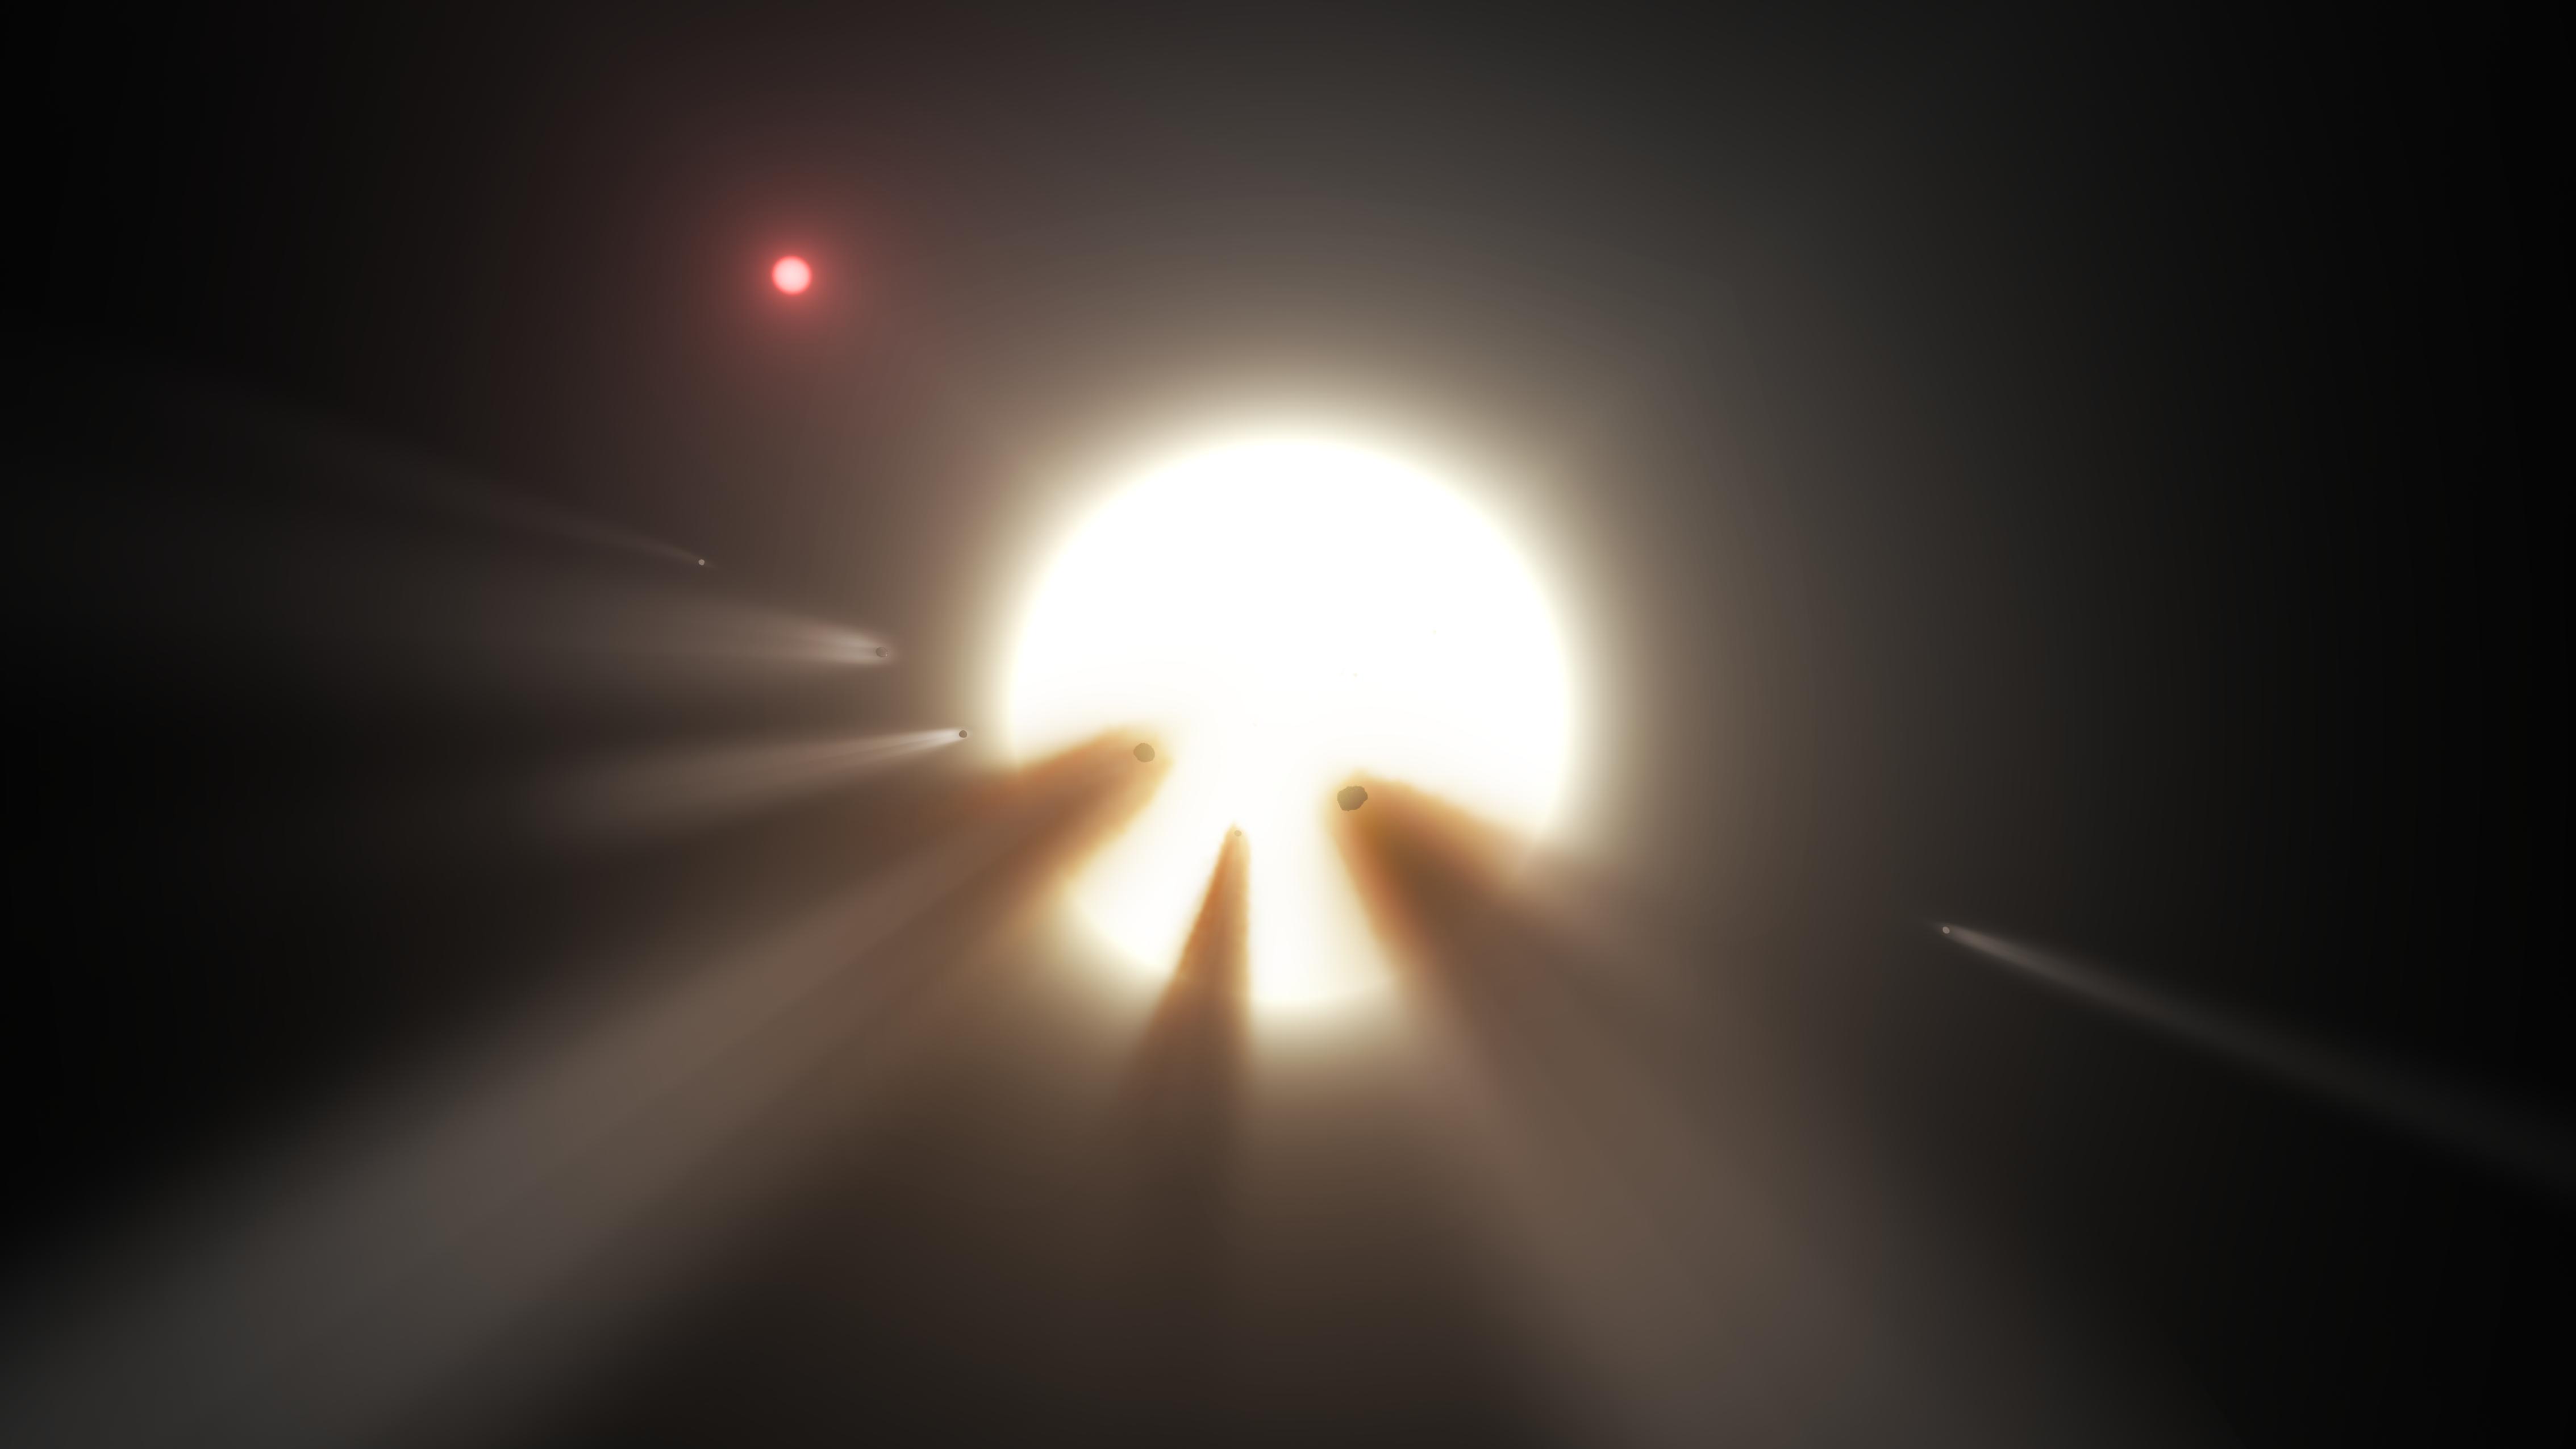 kic-8462852-1